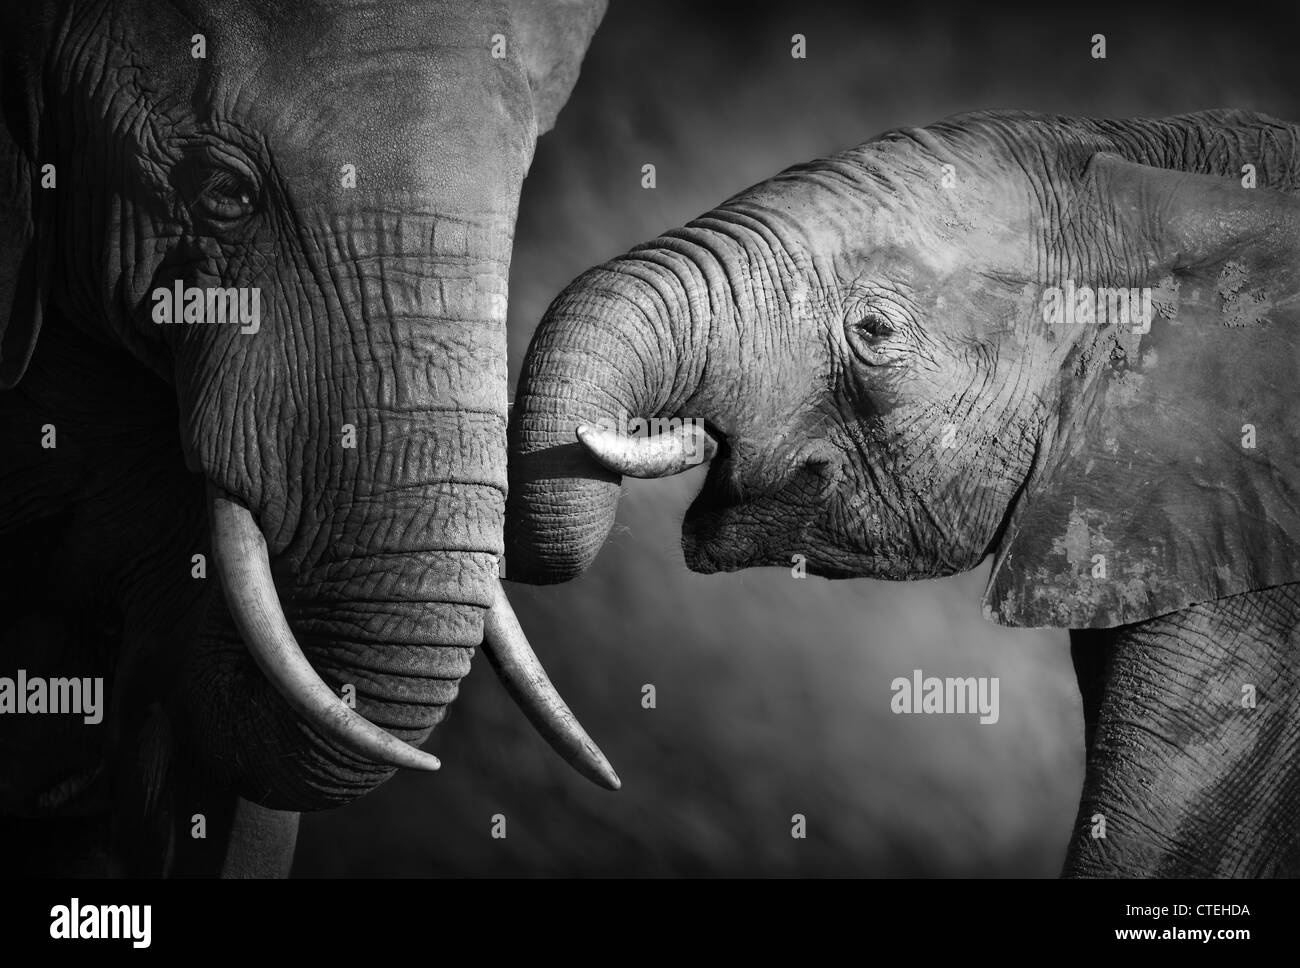 Montrer de l'affection des éléphants (traitement artistique) Banque D'Images